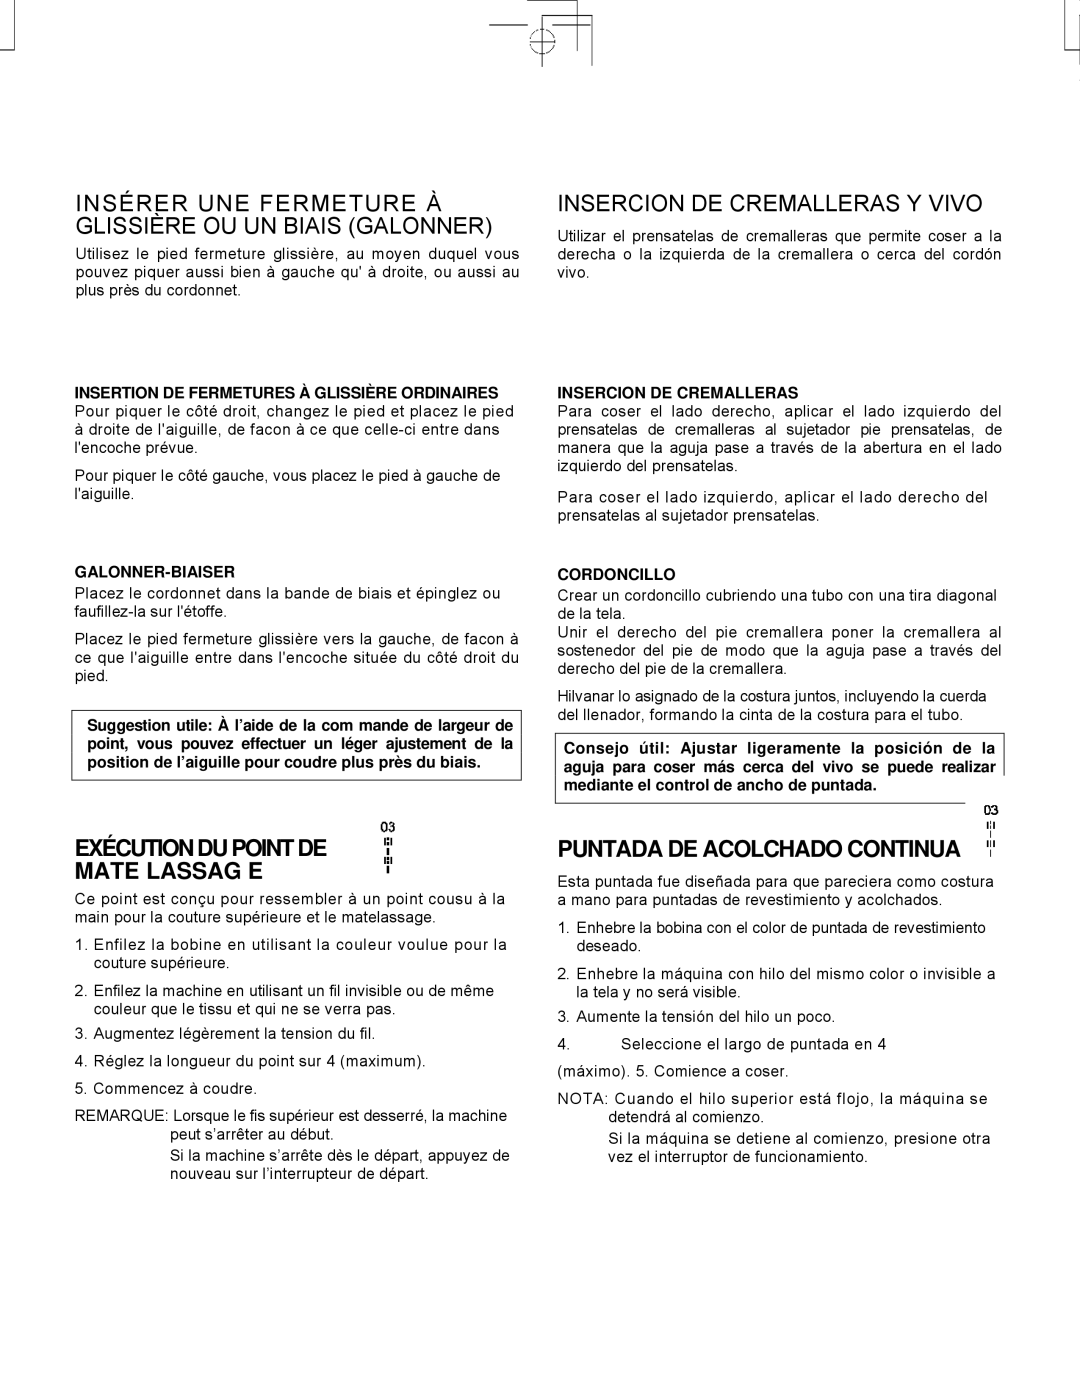 Singer CE-150 instruction manual Insérer UNE Fermeture À Glissière OU UN Biais Galonner, Insercion DE Cremalleras Y Vivo 